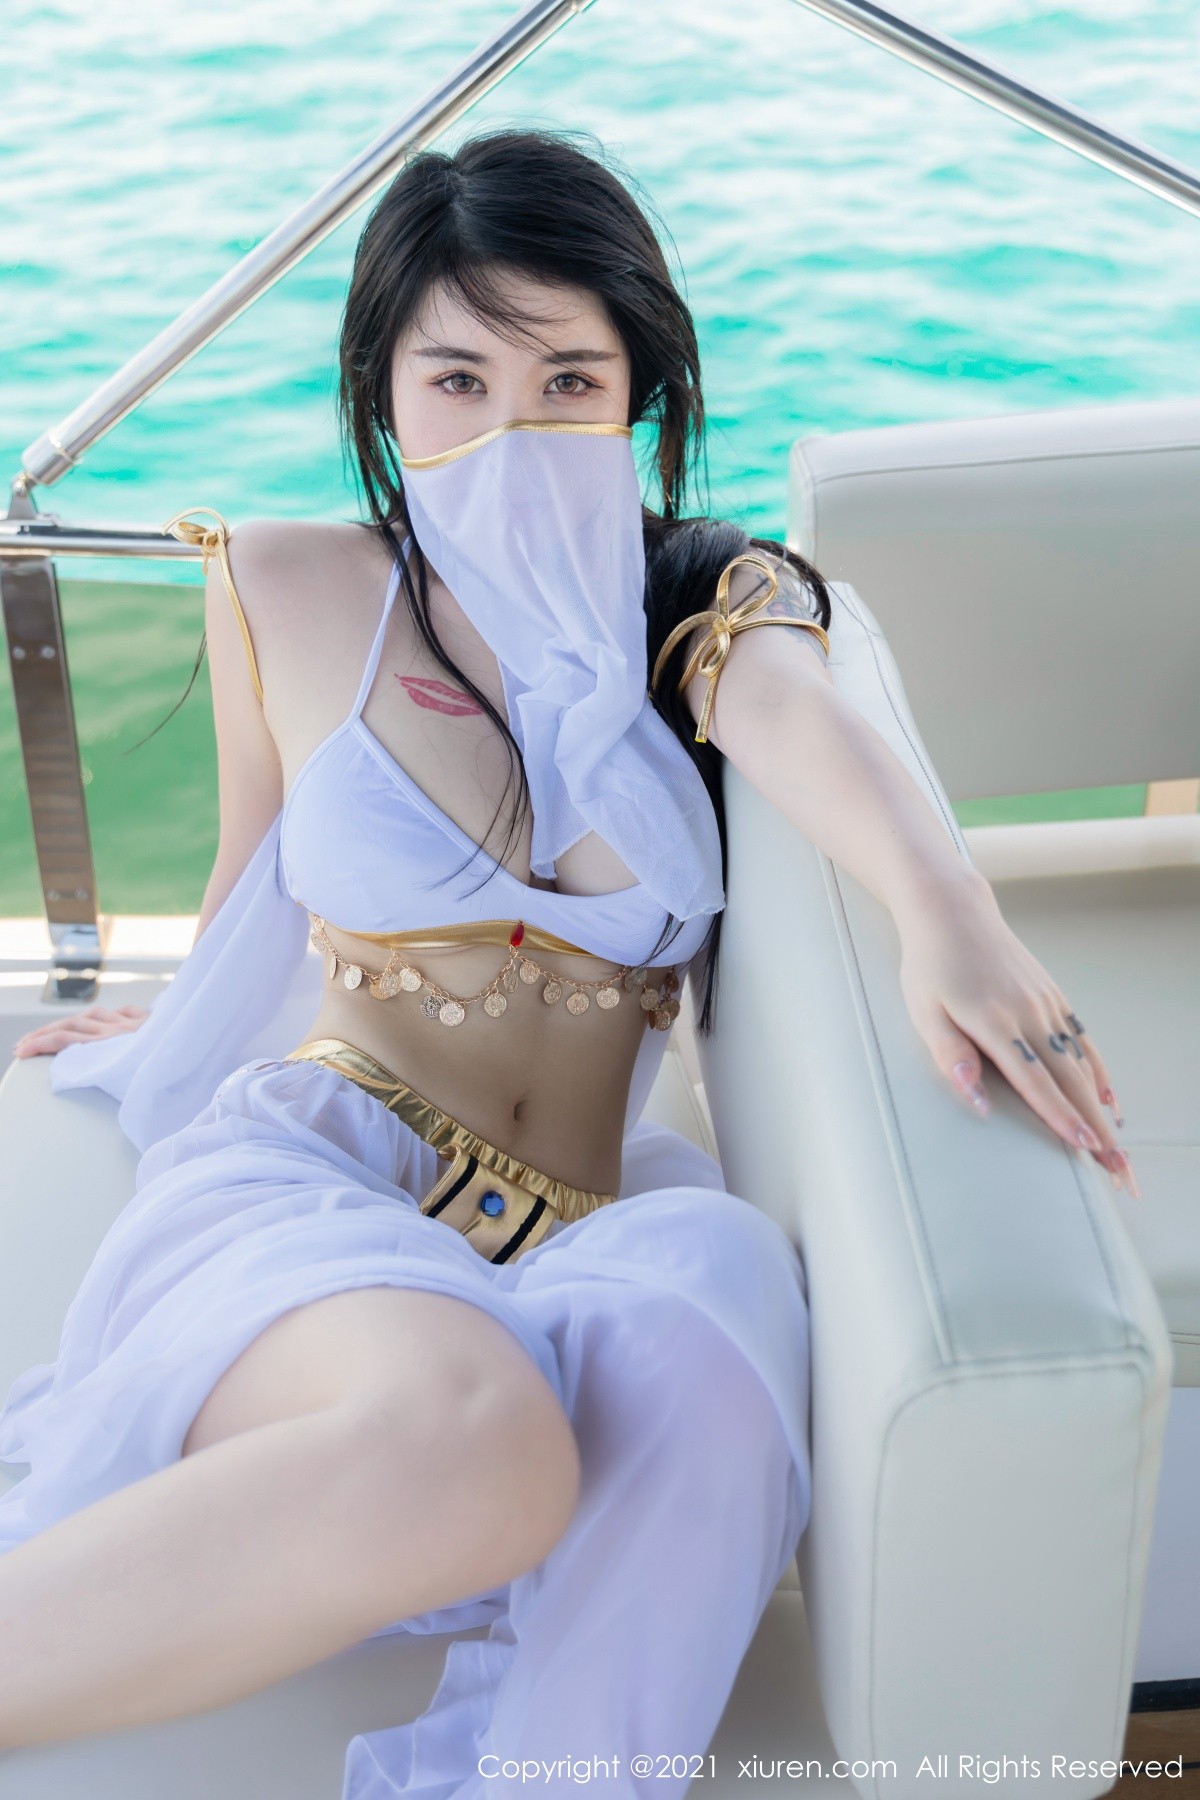 美女模特美七Mia绚丽异域风情海上游艇拍摄性感写真